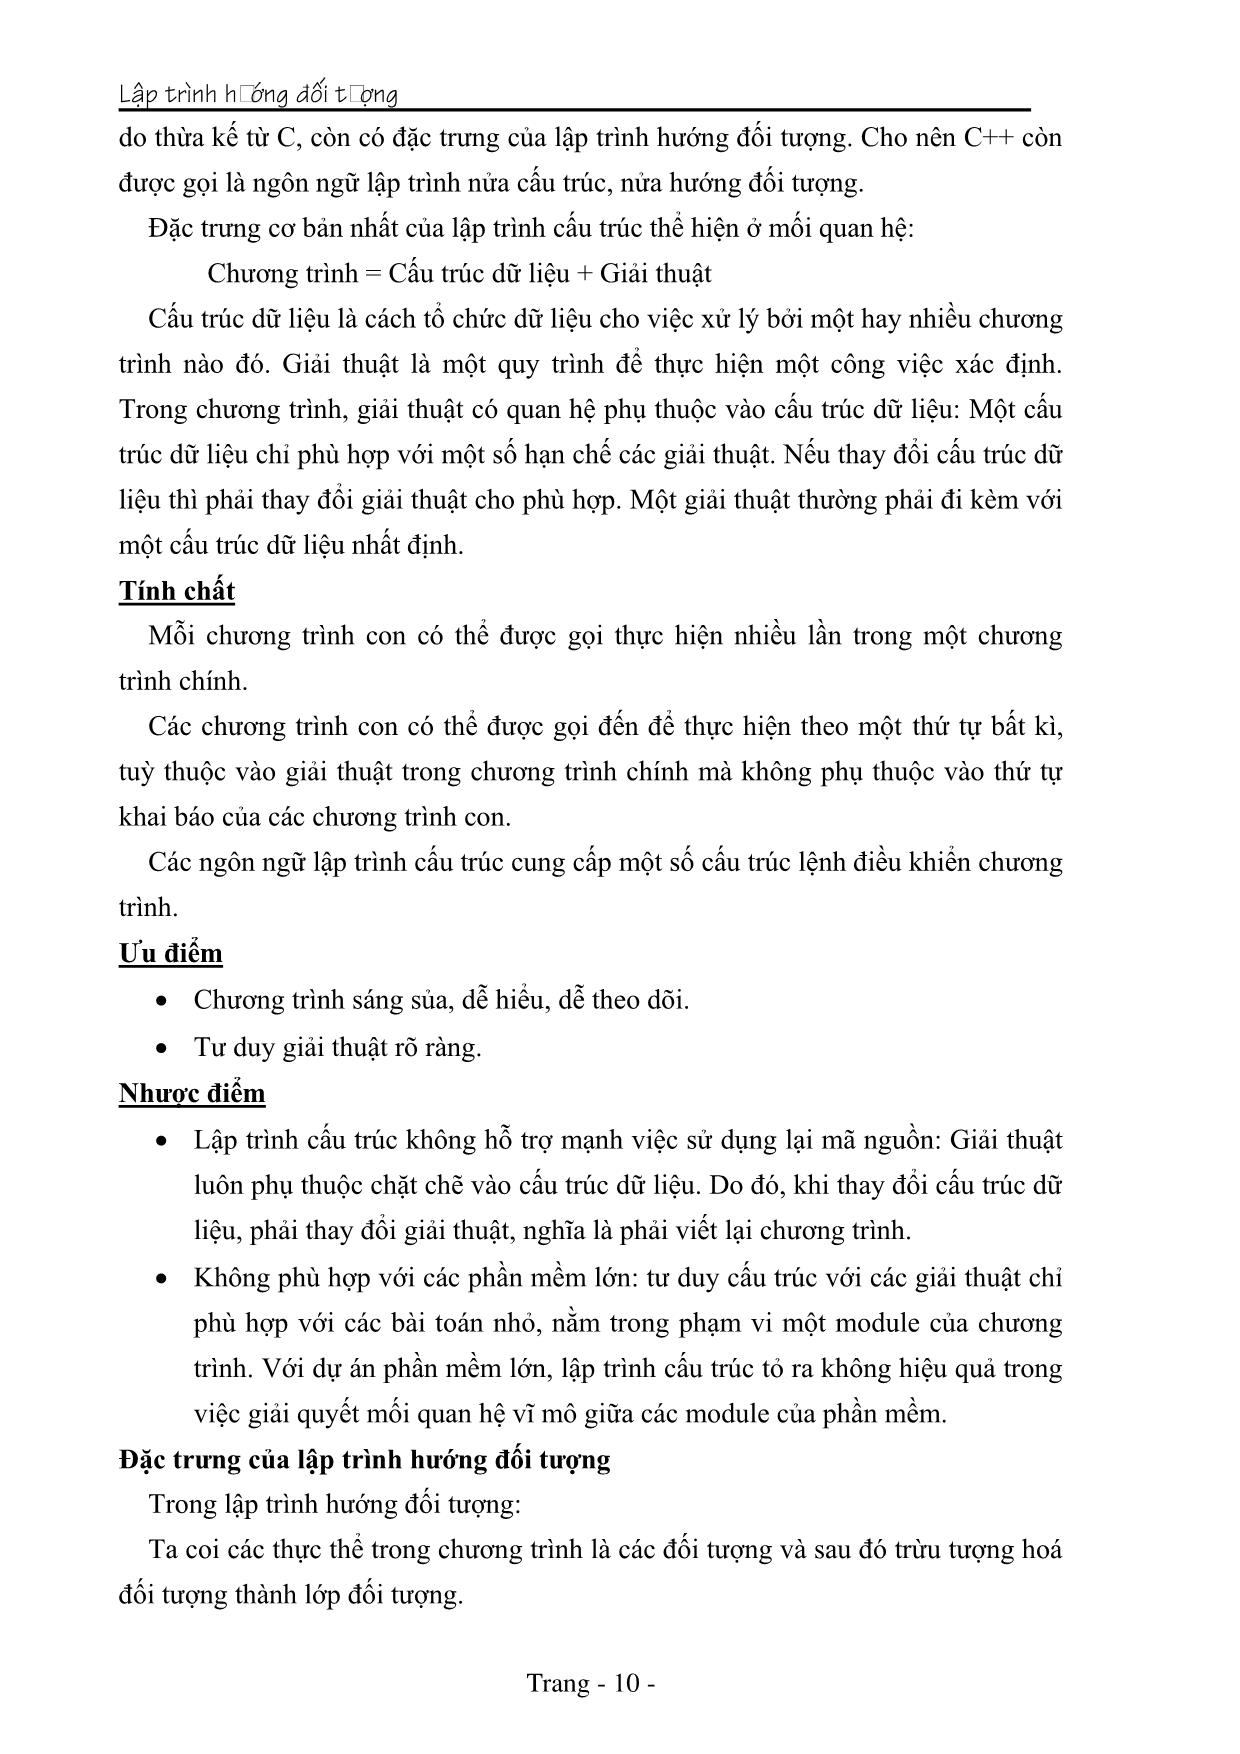 Giáo trình Lập trình hướng đối tượng (Phần 1) trang 10